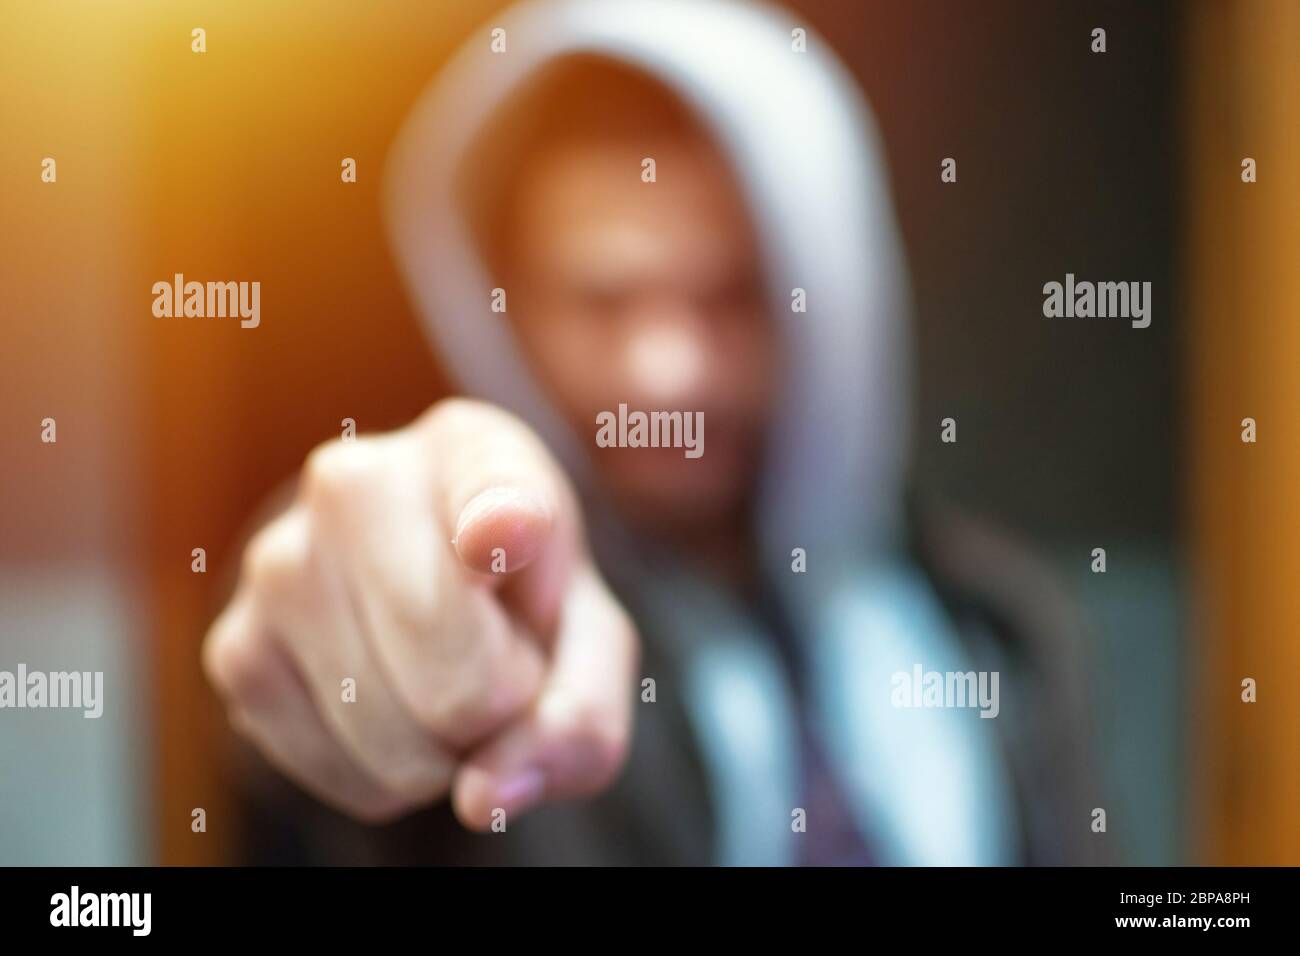 Anonymer und gesichtsloser Mann unter Hoodie Zeigen Finger auf Kamera isoliert - Inkognito und geheimnisvollen kriminellen auf Internet-Aktivitäten Konzept. Stockfoto